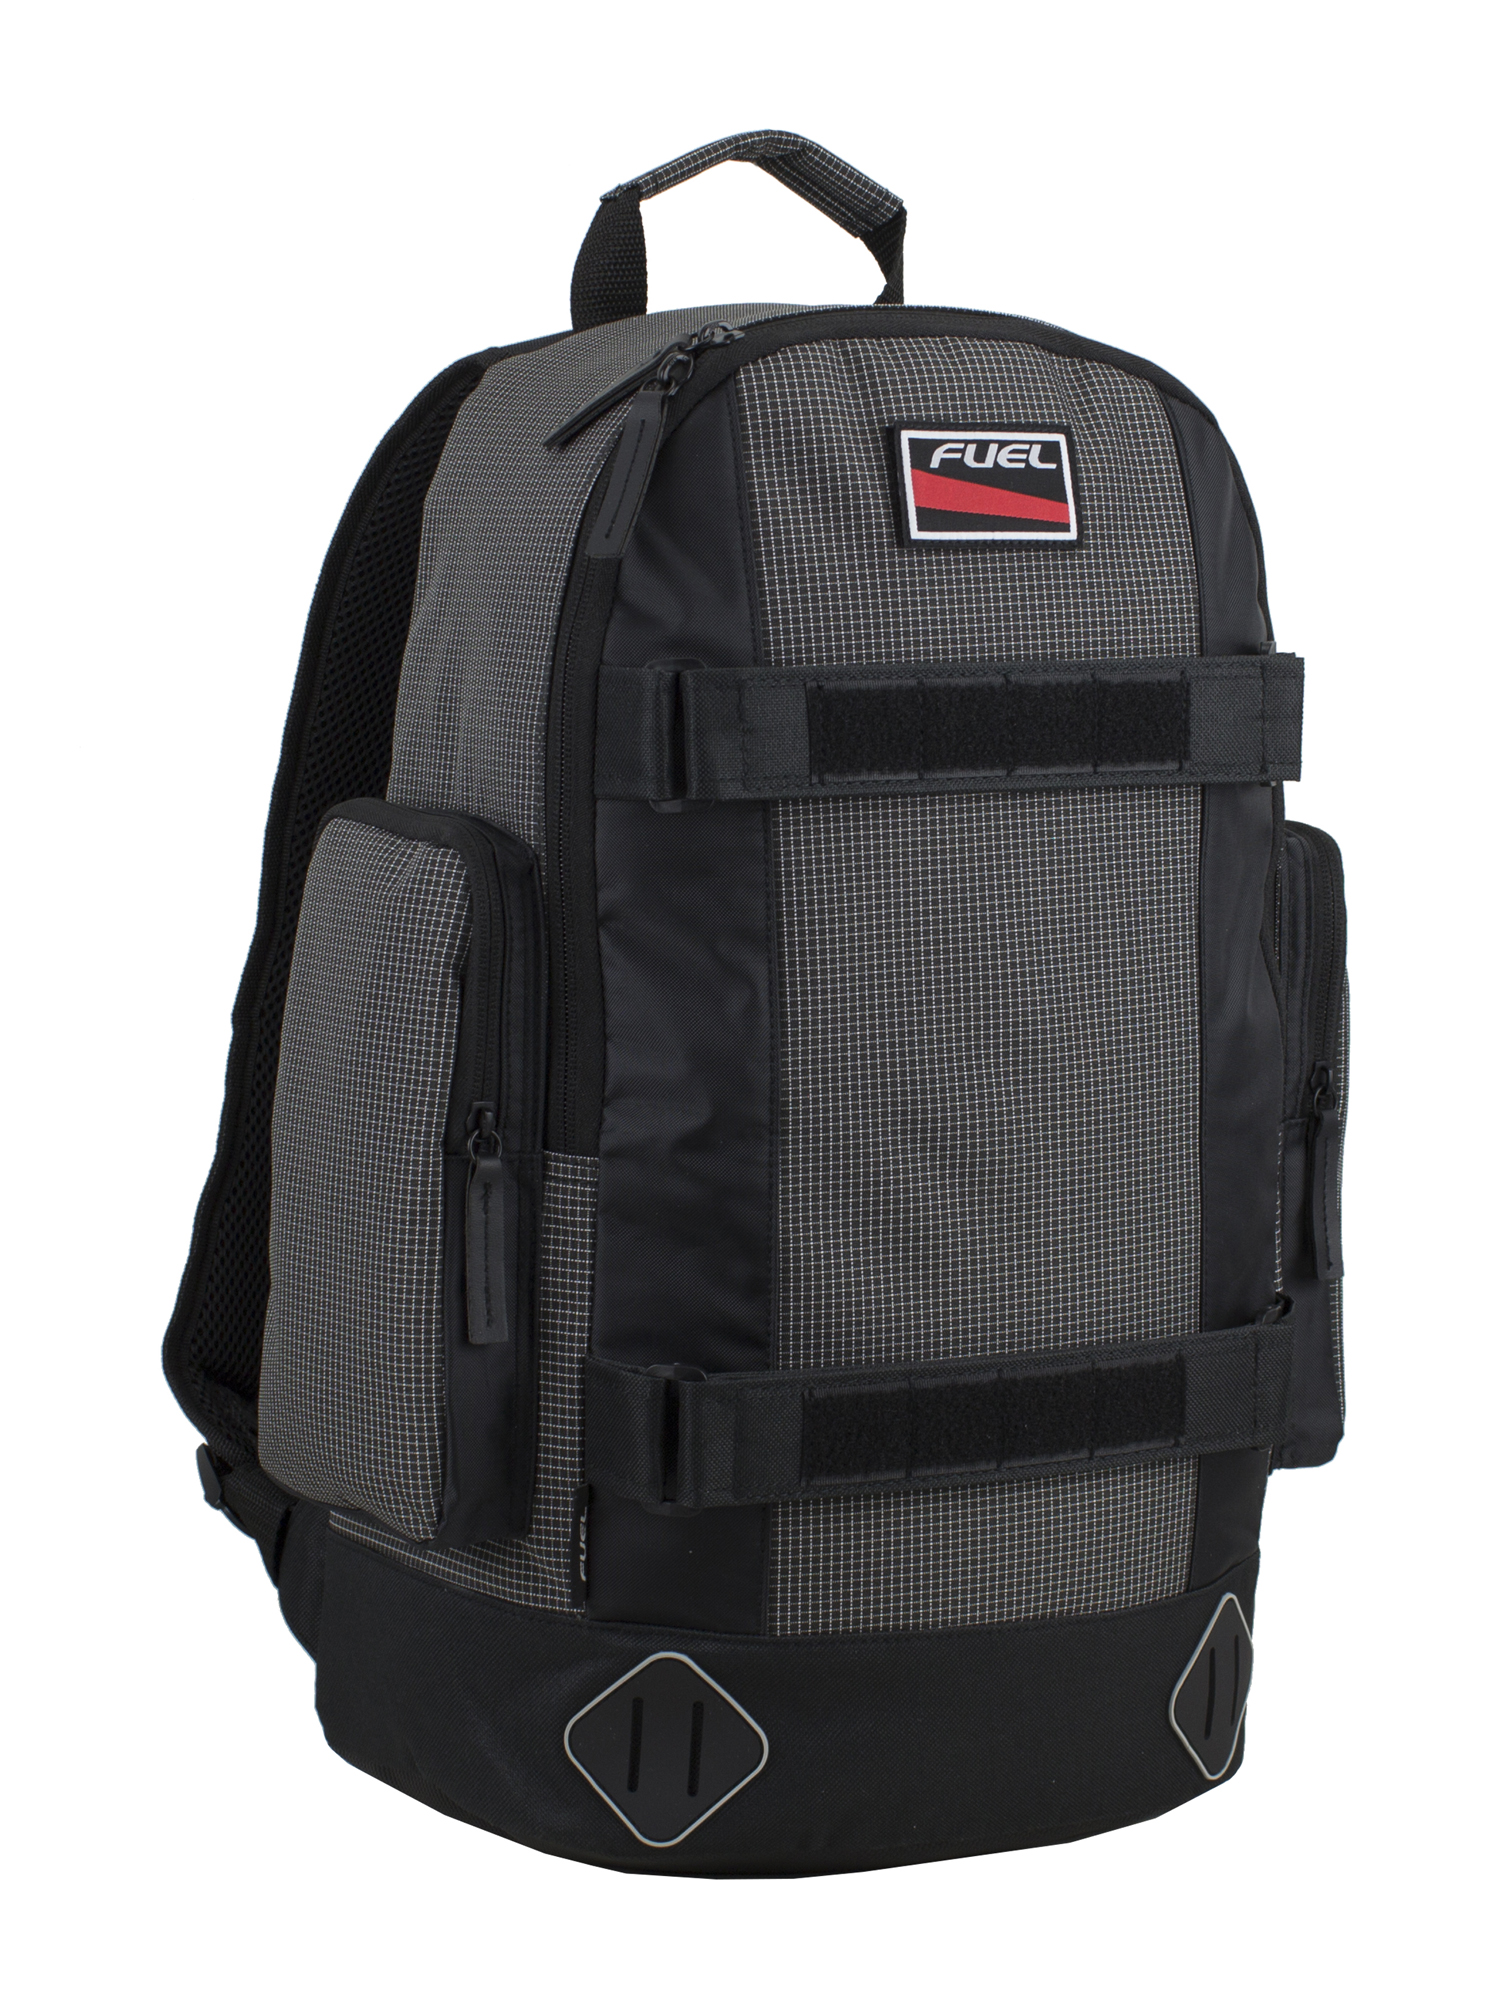 Fuel Pro Skater Backpack - image 1 of 6